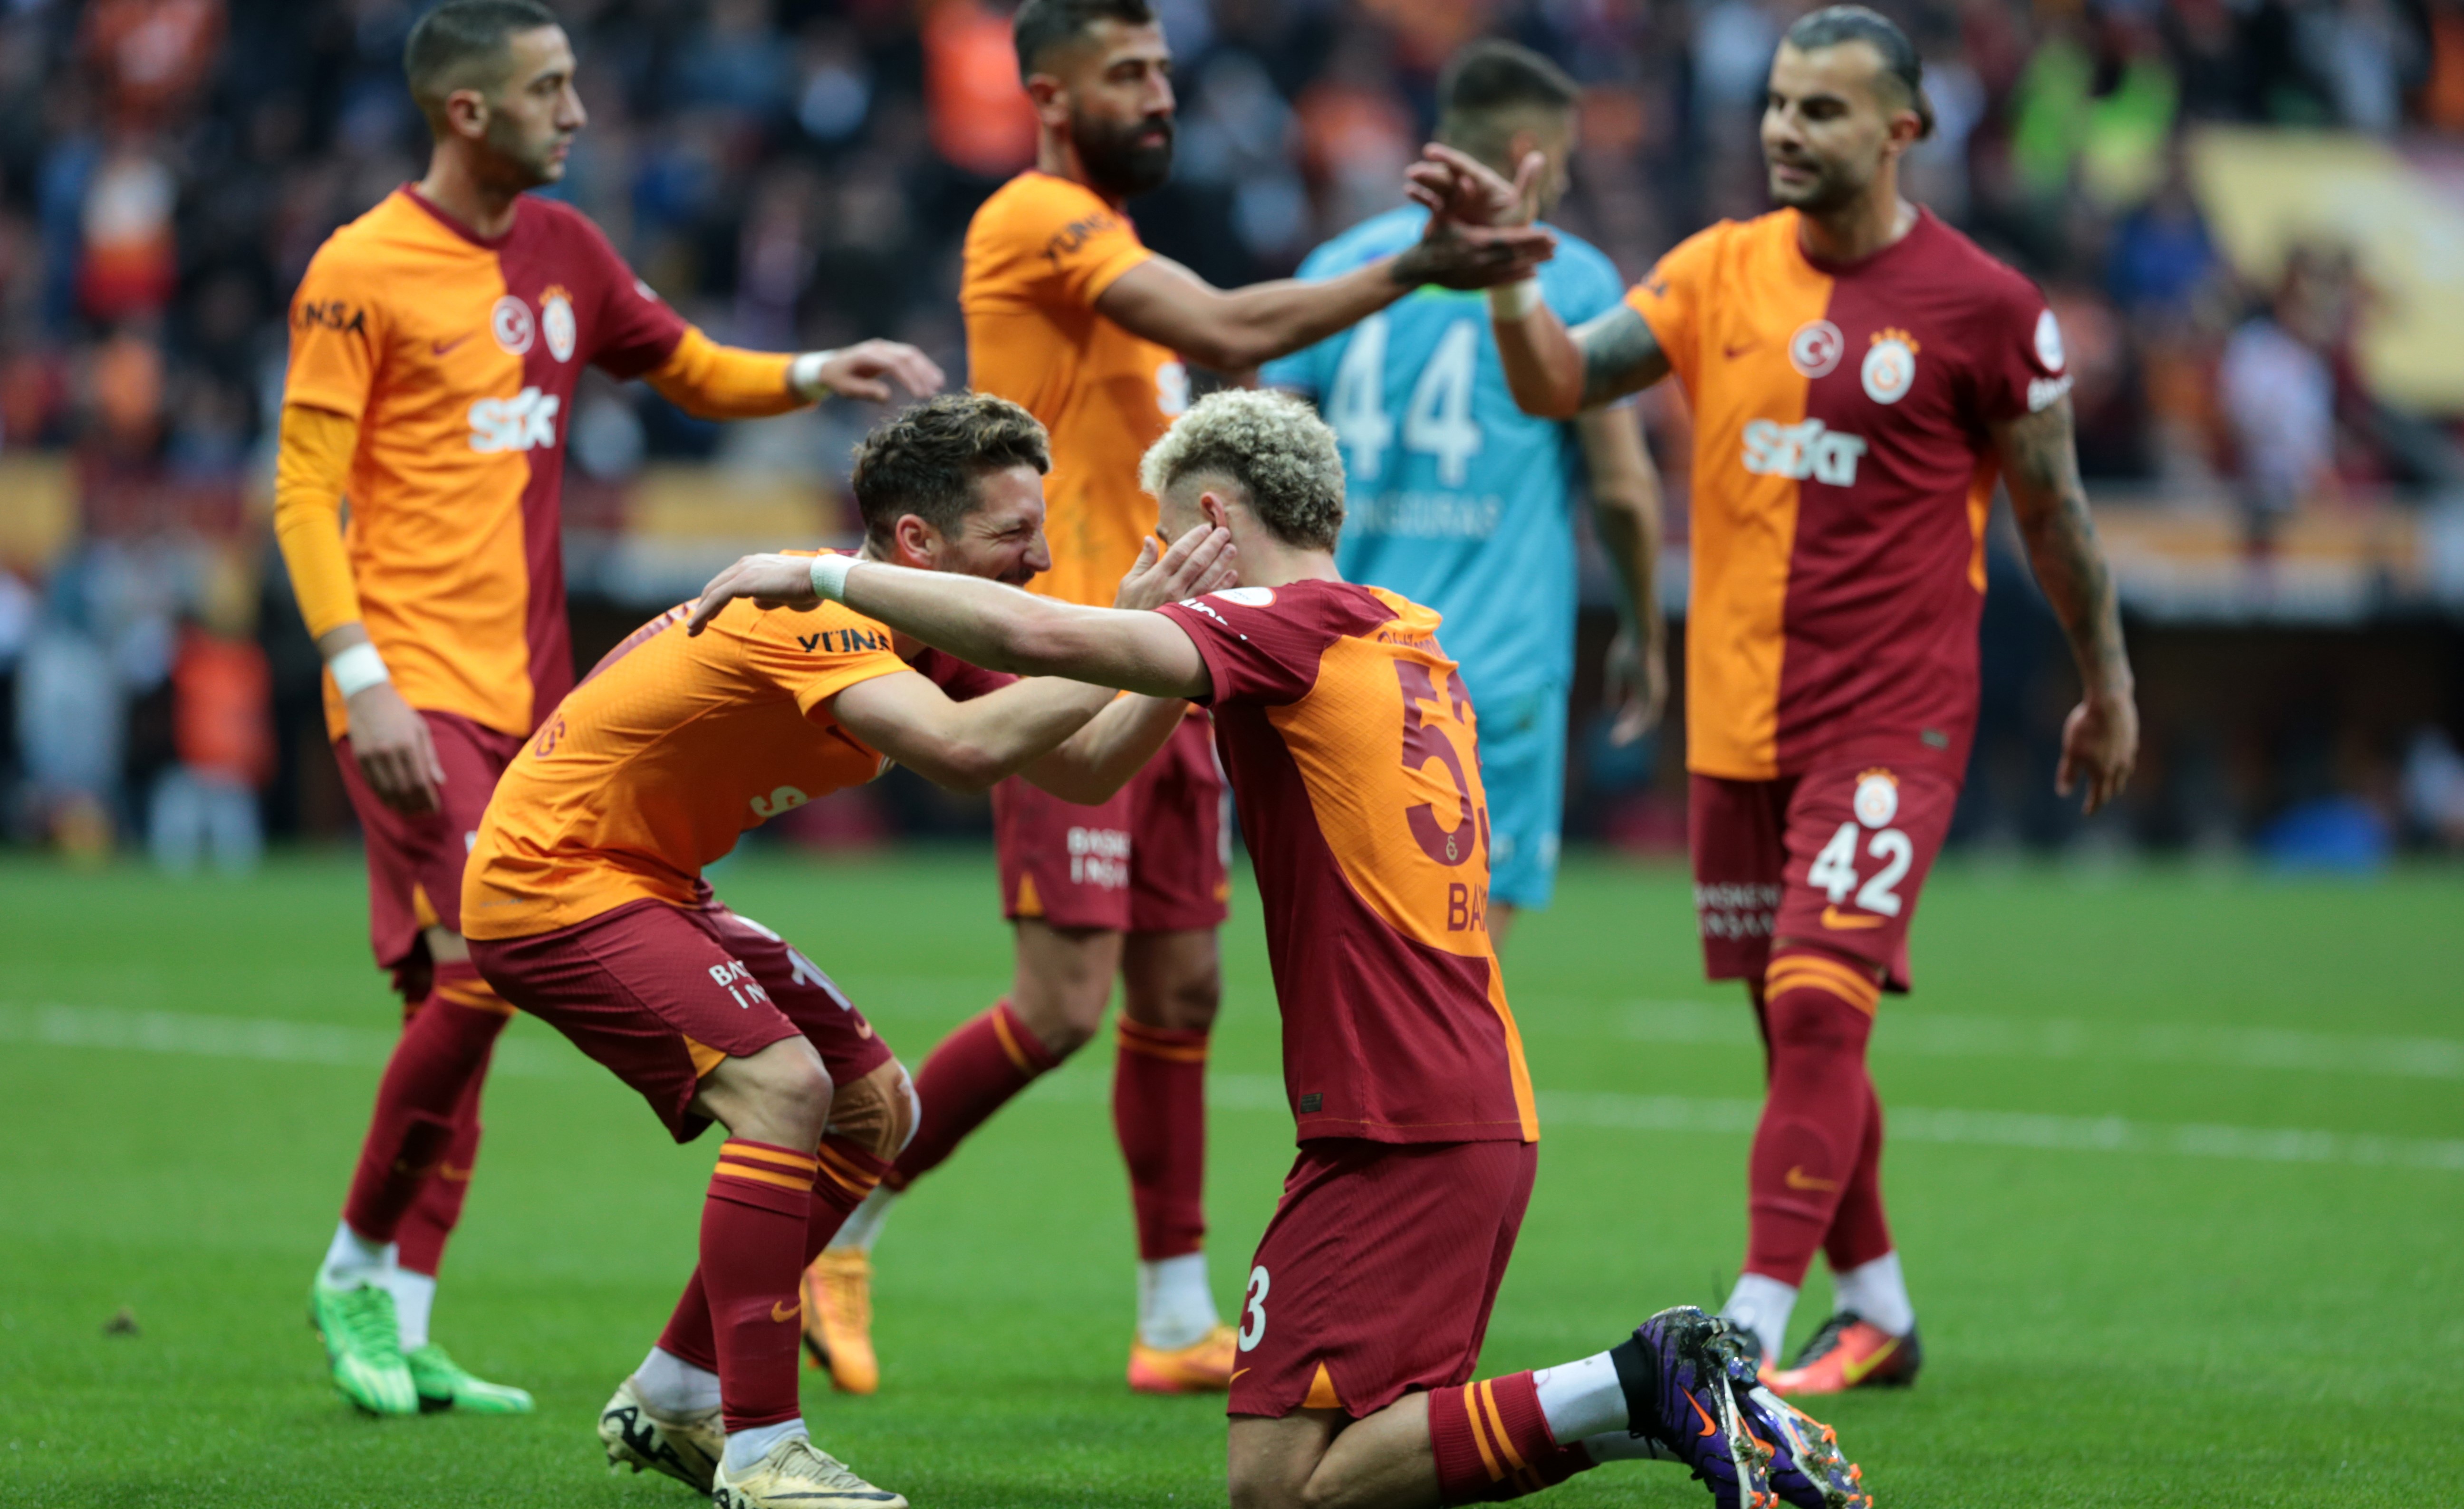 Galatasaray tüm zamanların puan rekorunu kırdı; Icardi gol krallığı yarışında arayı açtı